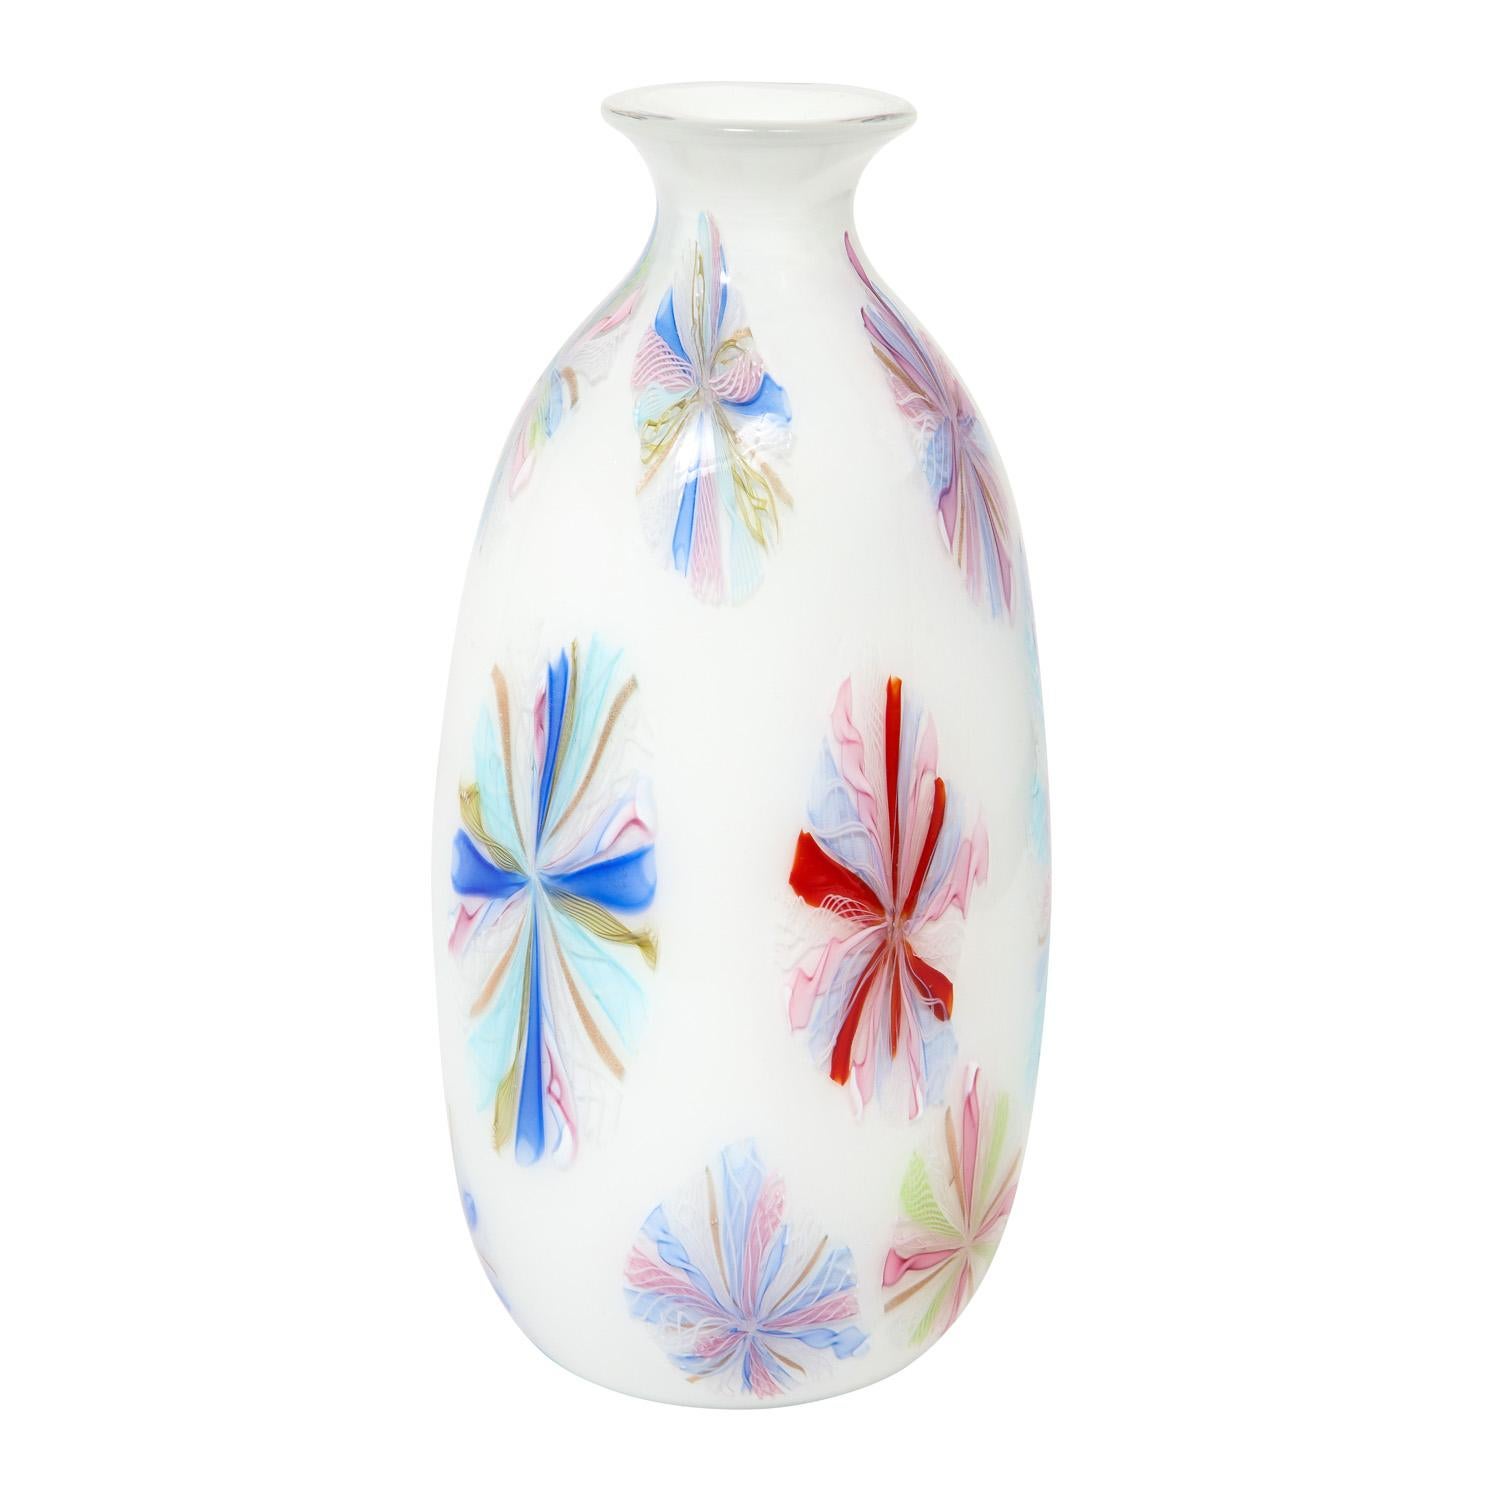 Große Vase aus mundgeblasenem Glas, farbenfrohe Murrhine über weißem Glas, von Arte Vetraria Muranese oder A.V.E.M., Murano Italien, 1950er Jahre. Diese Vase ist wie ein Juwel.